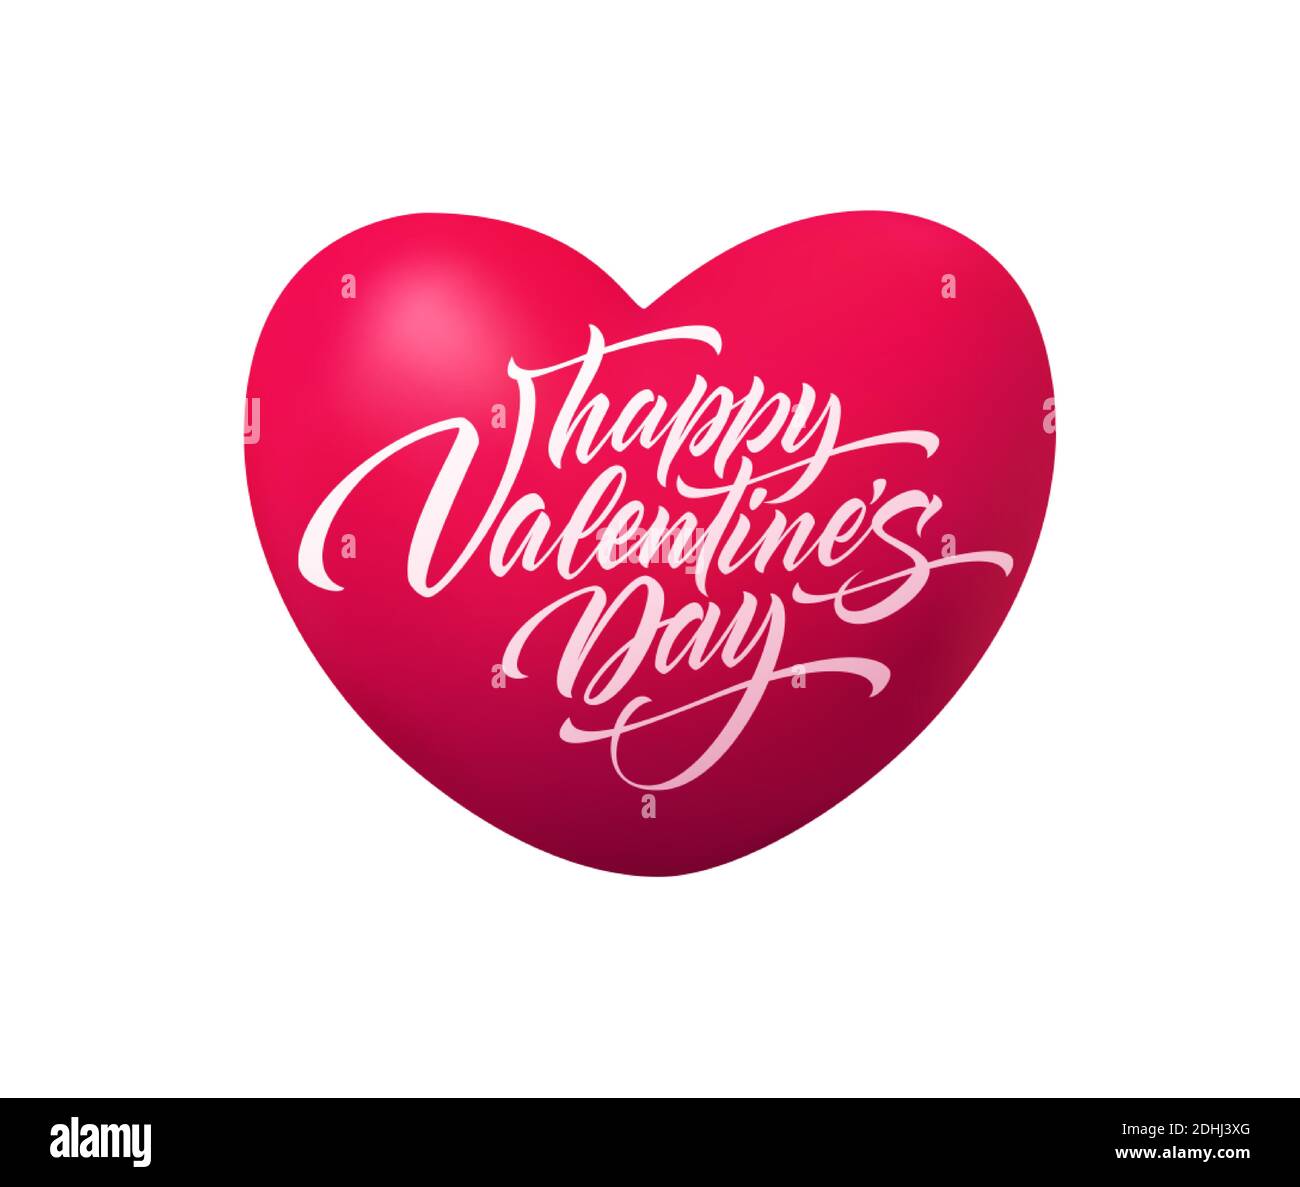 Realistische rote Herzform mit Aufschrift Happy Valentines Day. Vektorgrafik Stock Vektor